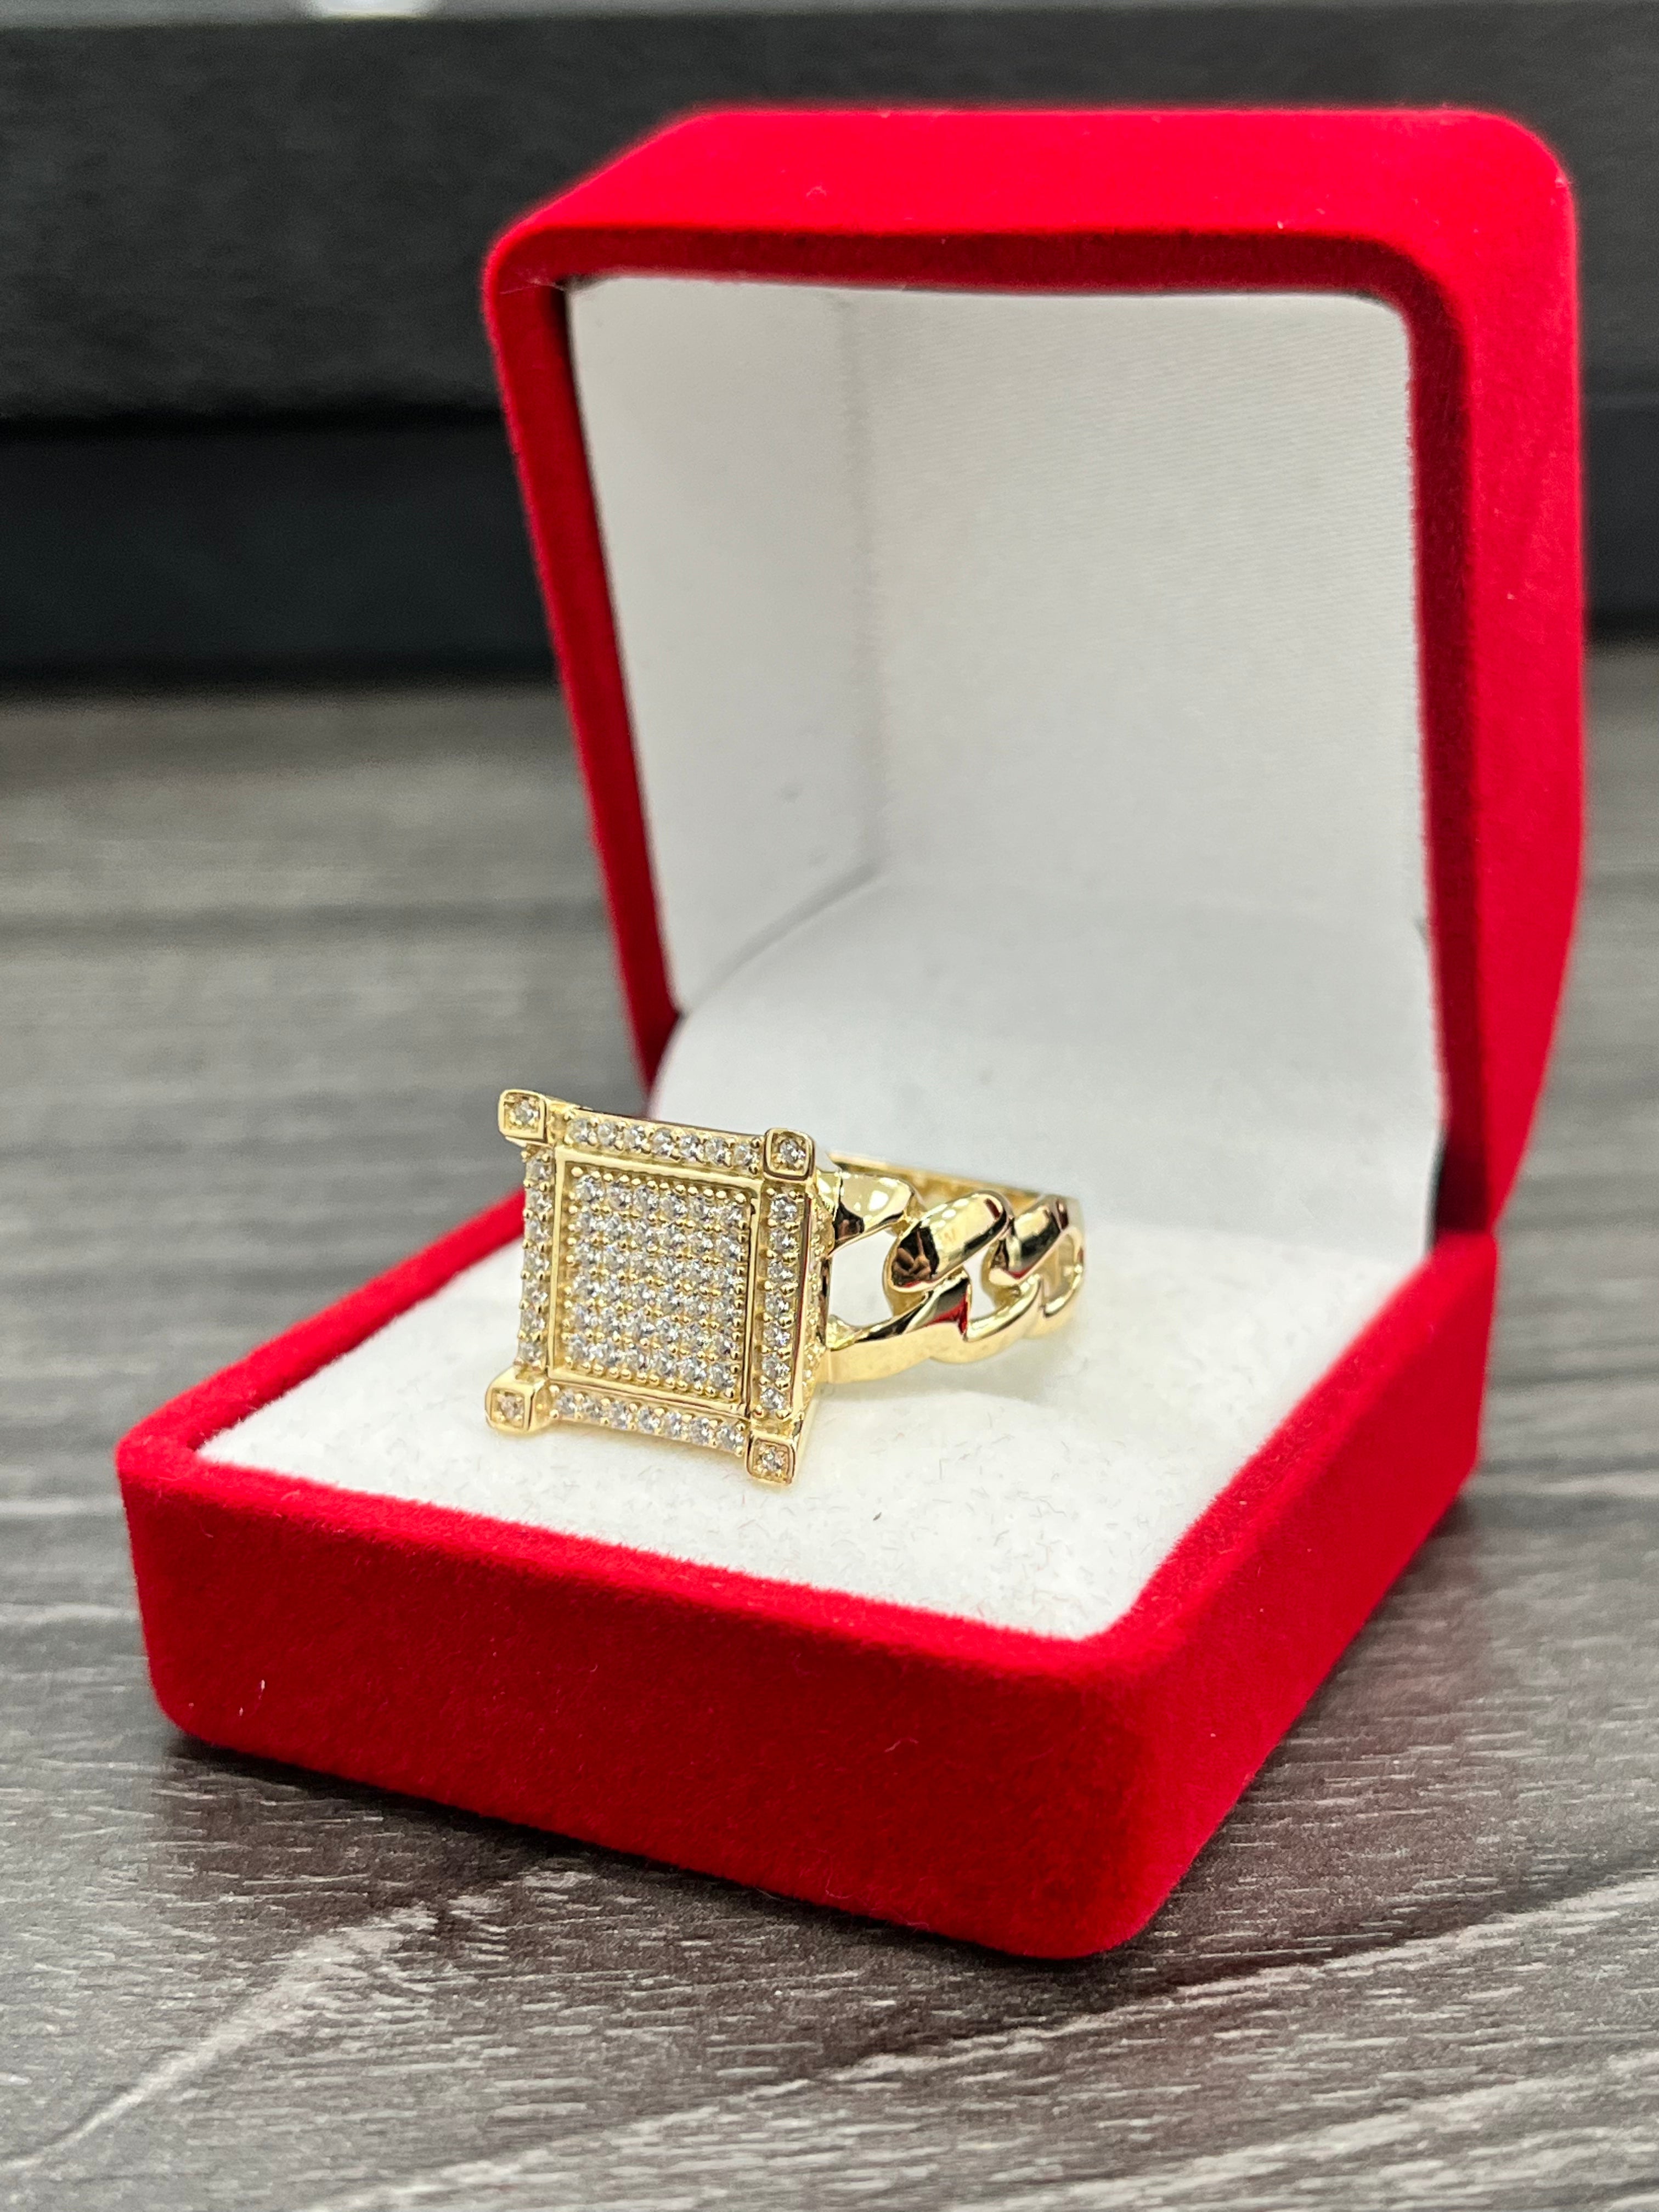 💍ANILLO ORO 14K 💍14K GOLD LADY RING💍 – Jasny Jewelry